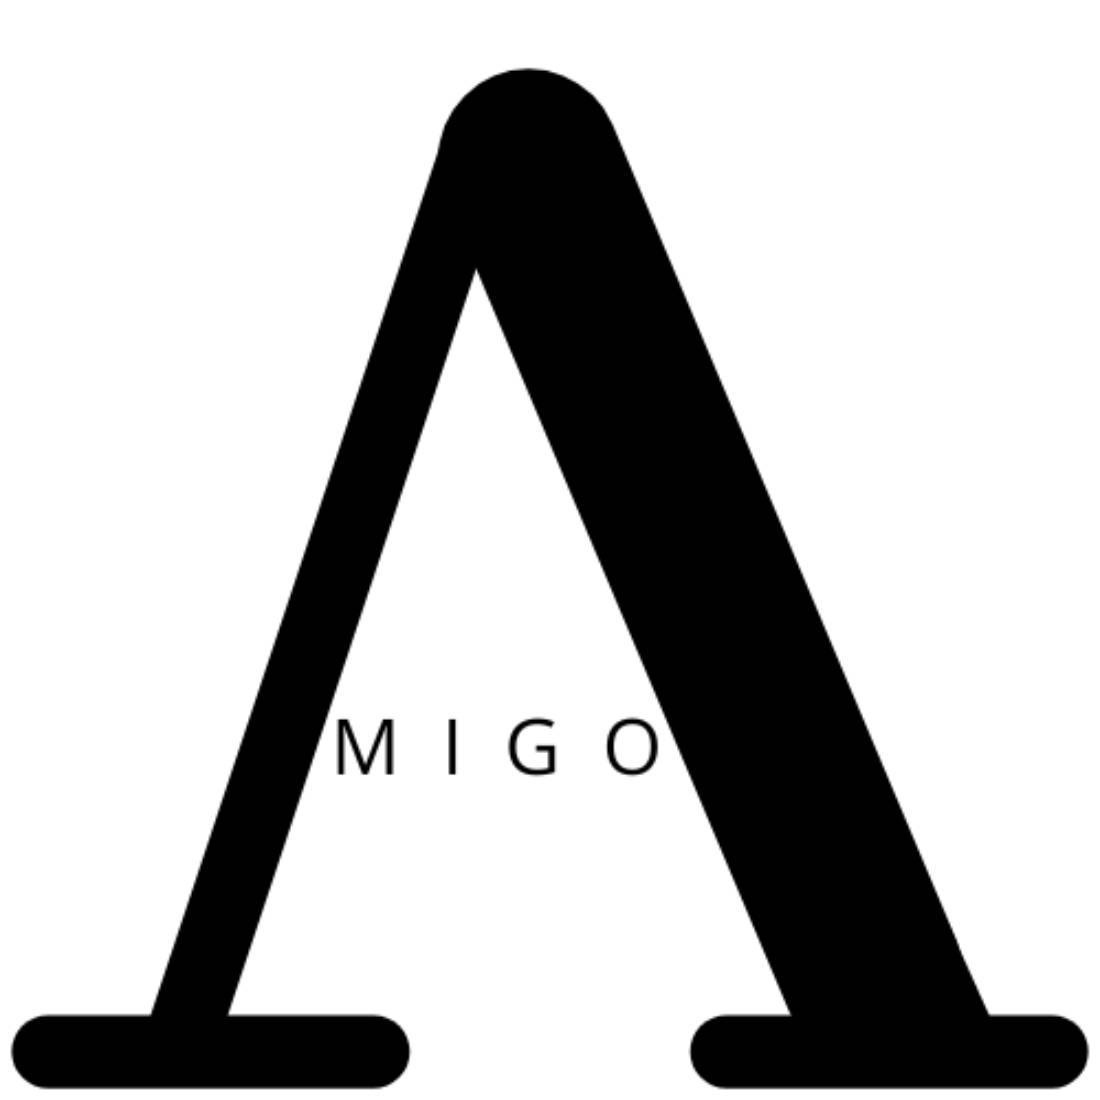 Amigo Letter A Logo Design cover image.